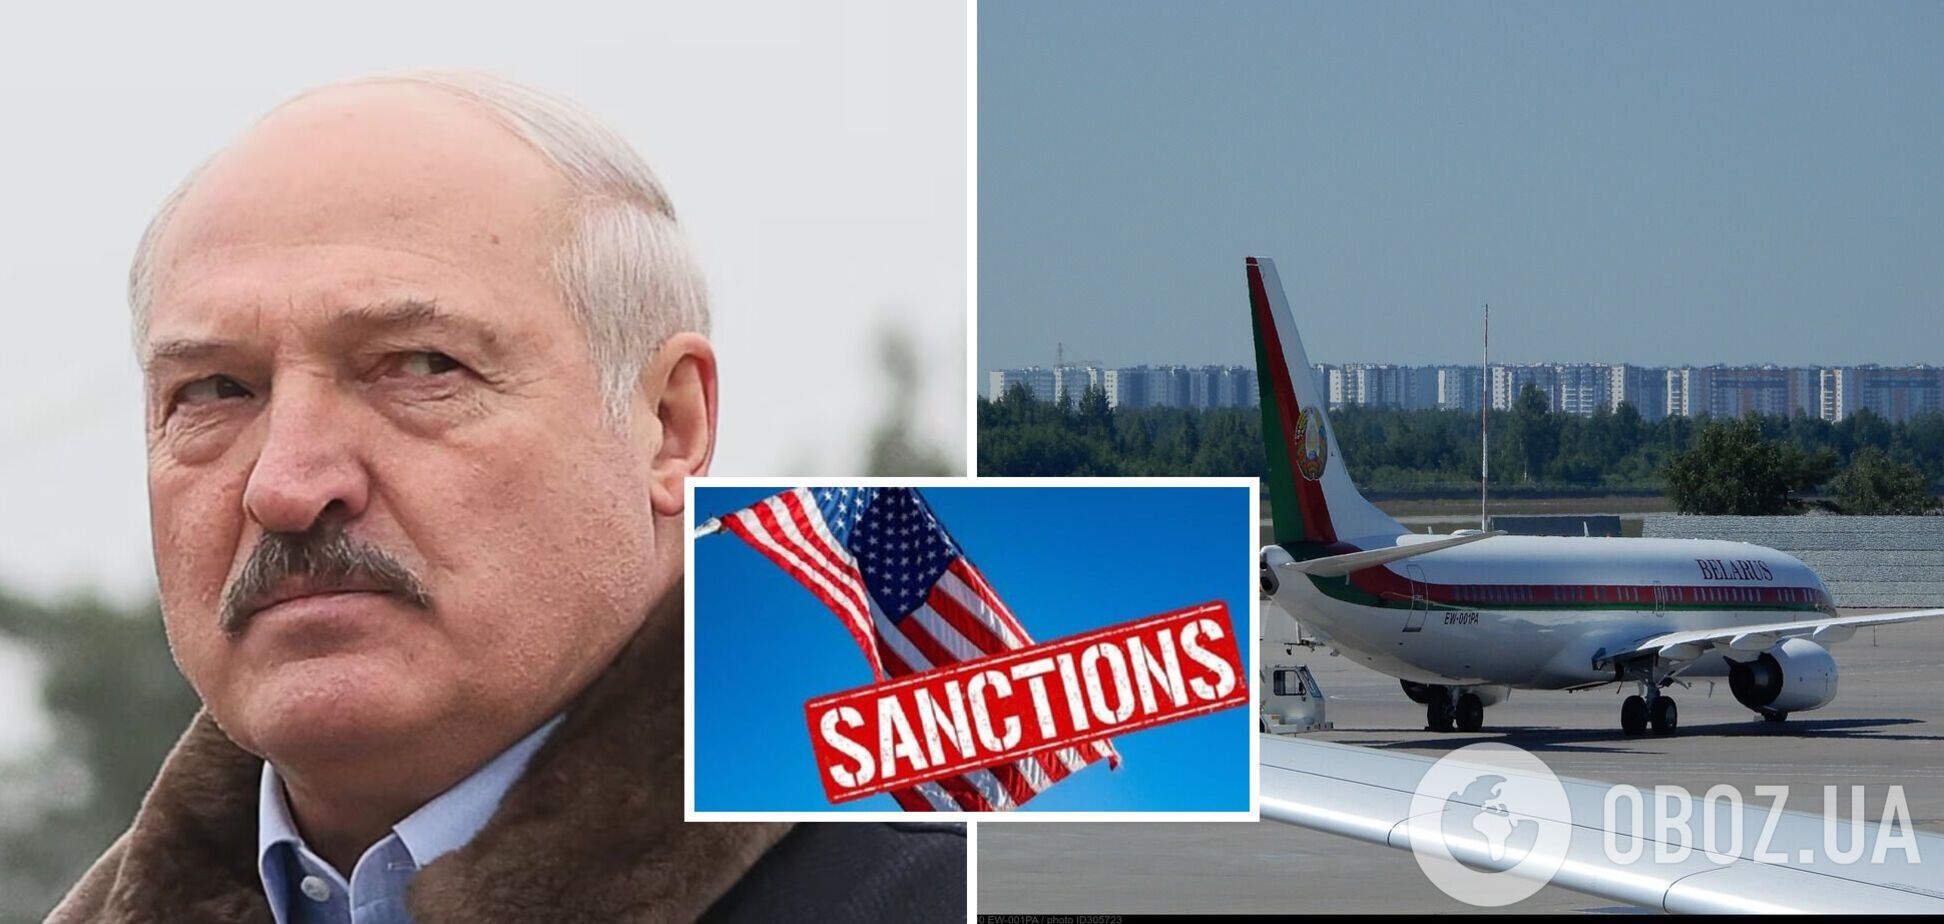 Самолет Лукашенко попал под санкции США